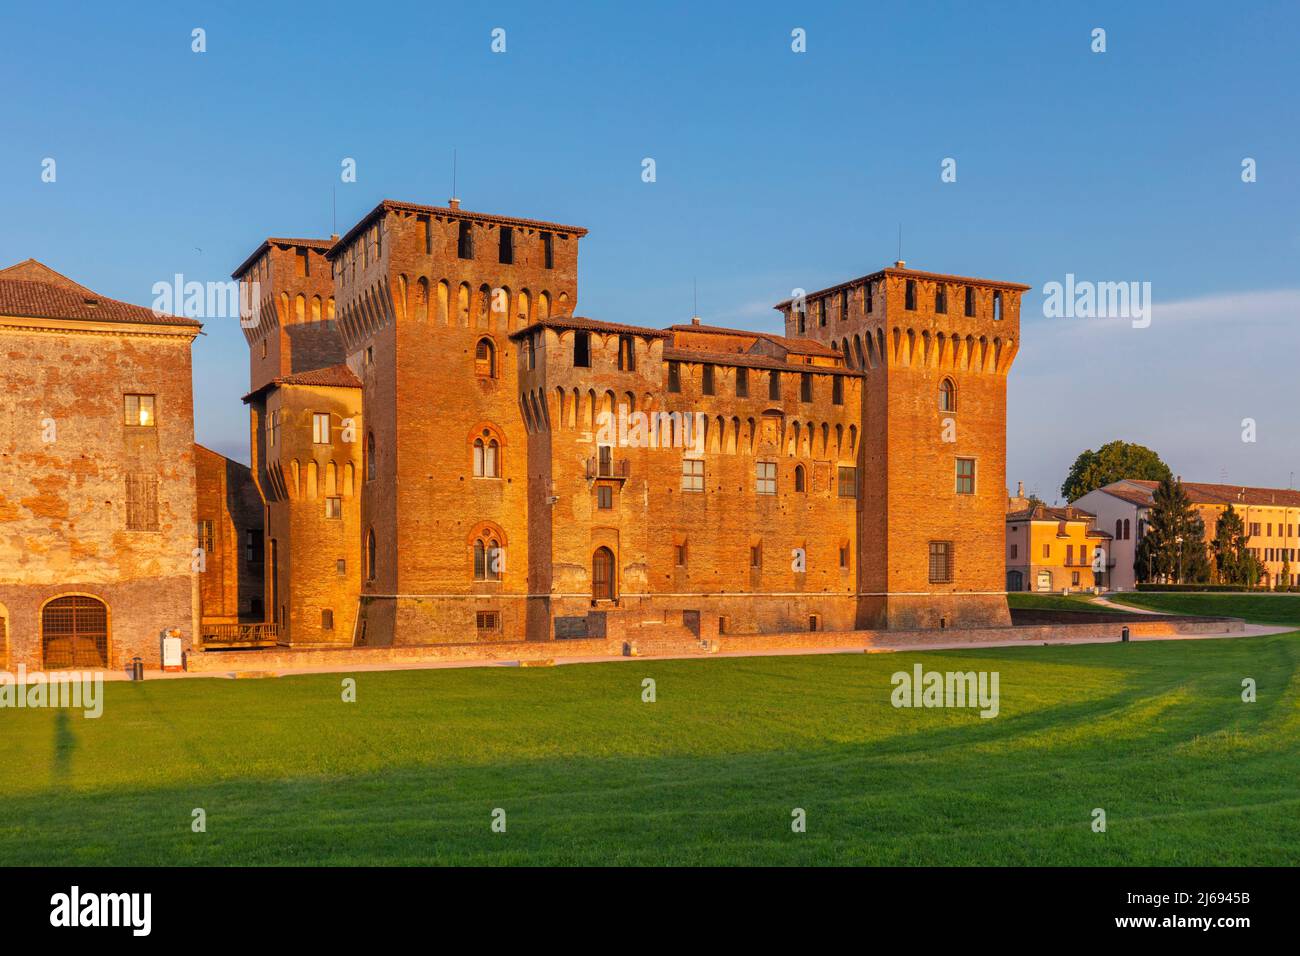 Château de San Giorgio, Mantoue (Mantoue), site classé au patrimoine mondial de l'UNESCO, Lombardie (Lombardie), Italie Banque D'Images